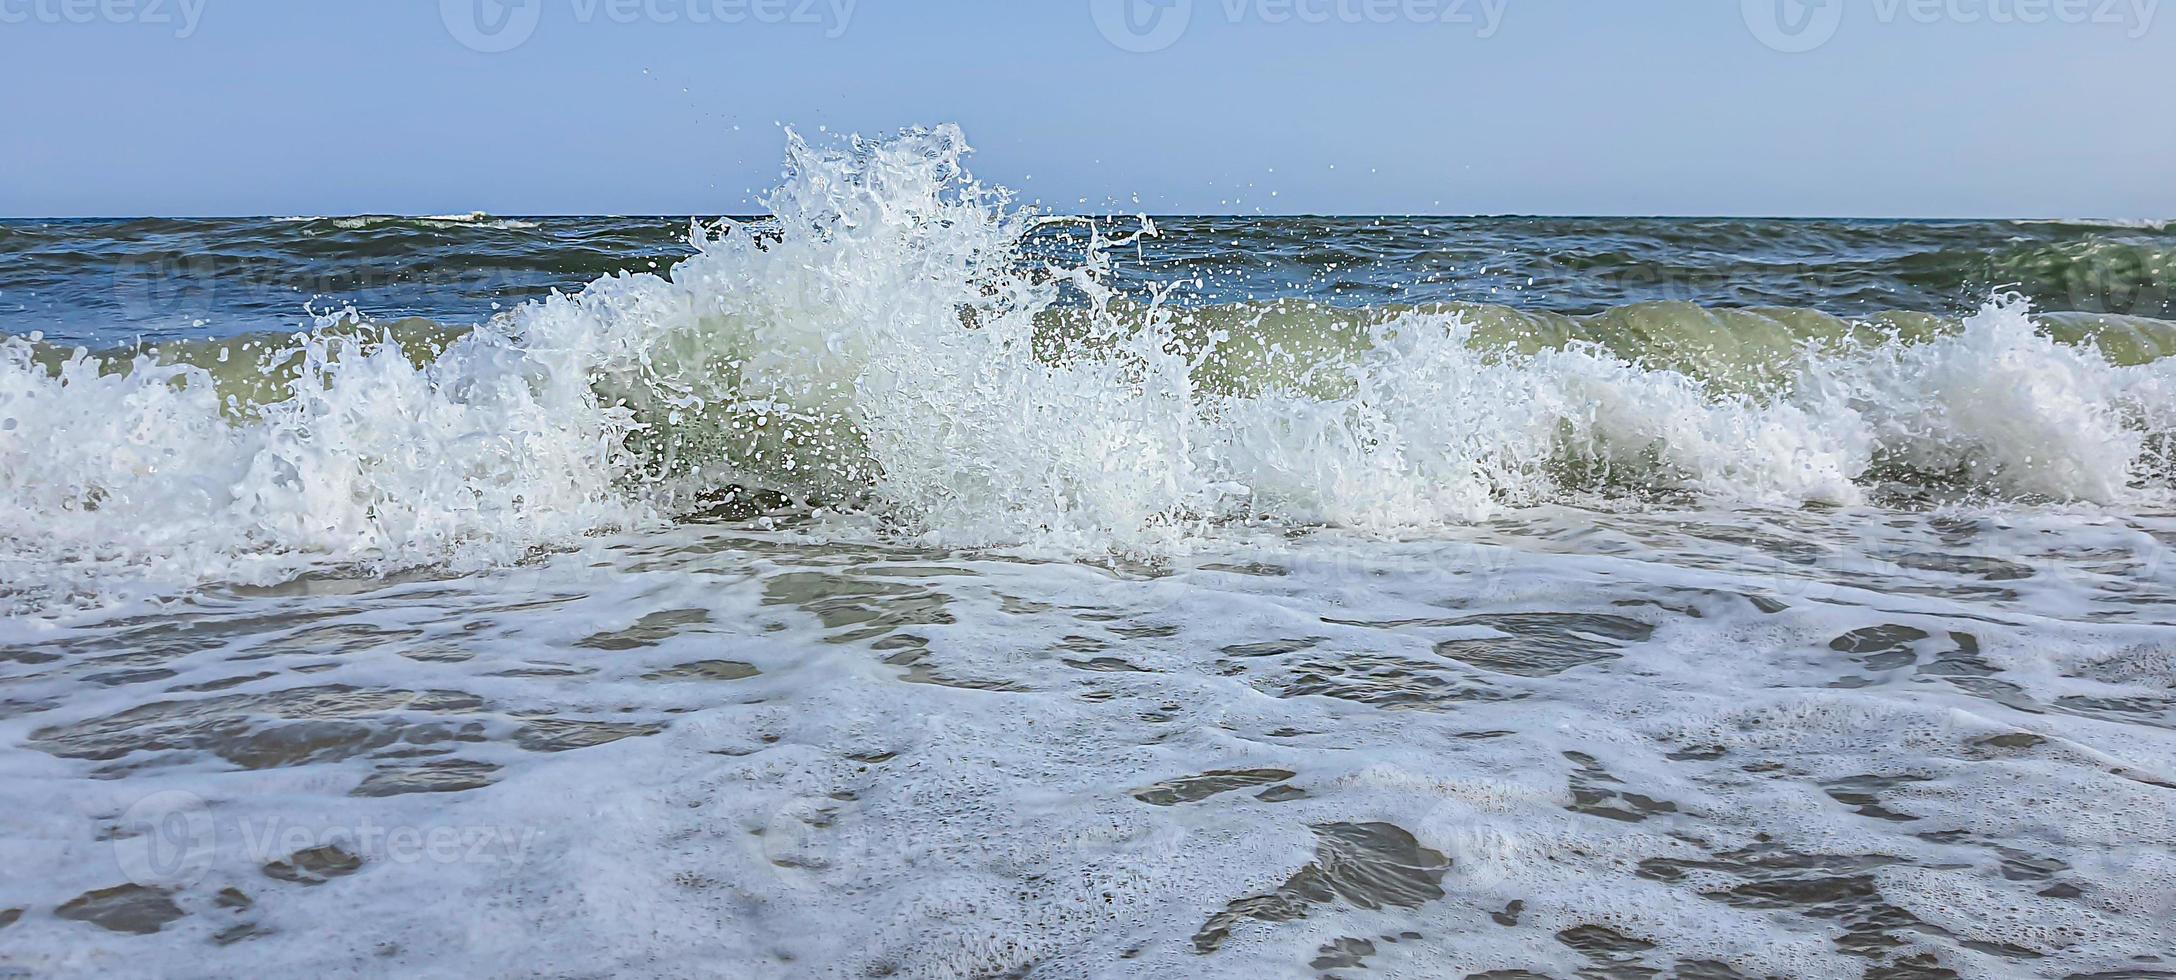 zeegezicht. azuurblauwe kleur van water, golven schuimend op de kust. foto